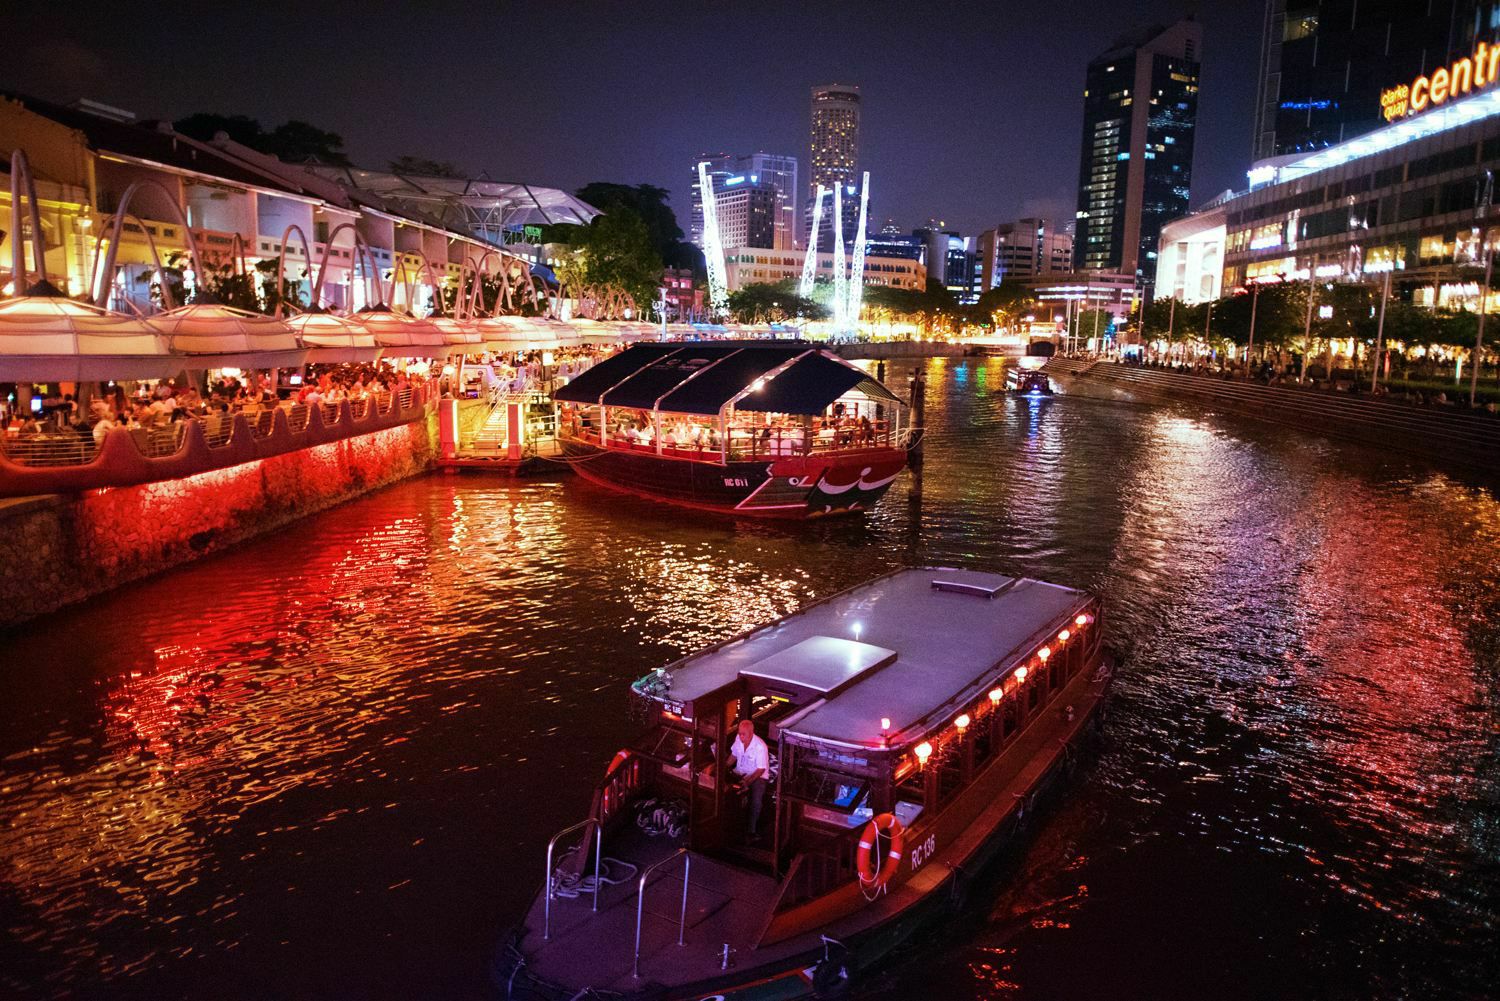 【携程攻略】新加坡新加坡滨海湾花园景点,新加坡的新地标,每天晚上有2场电,光,声表演秀,太漂亮了.好像置身阿凡…